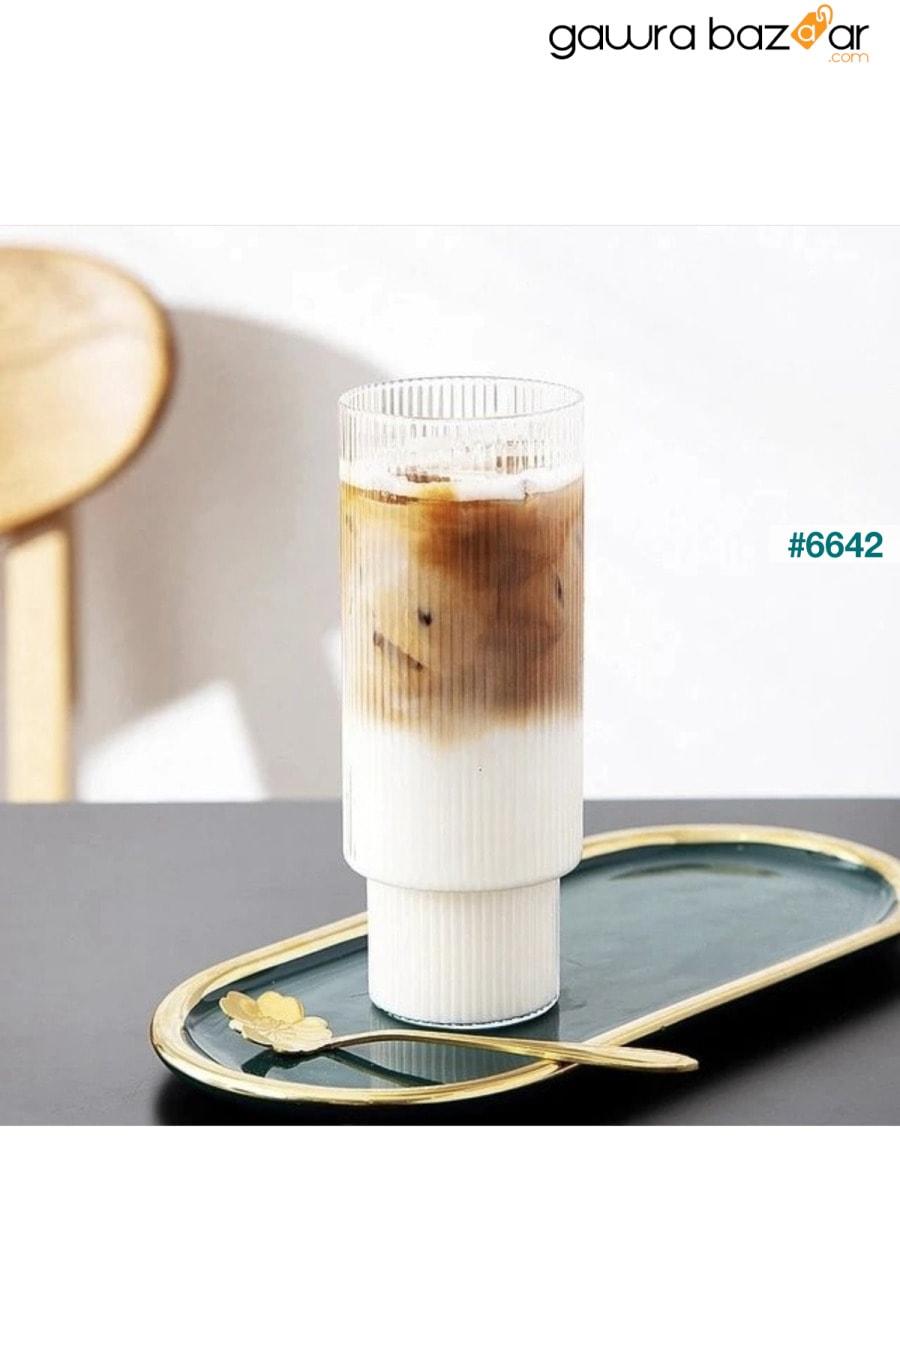 كأس اوريغامي كبير الحجم مقاوم للحرارة | فنجان القهوة والتقديم | الزجاج البورسليكات KÜÇÜK EW 0